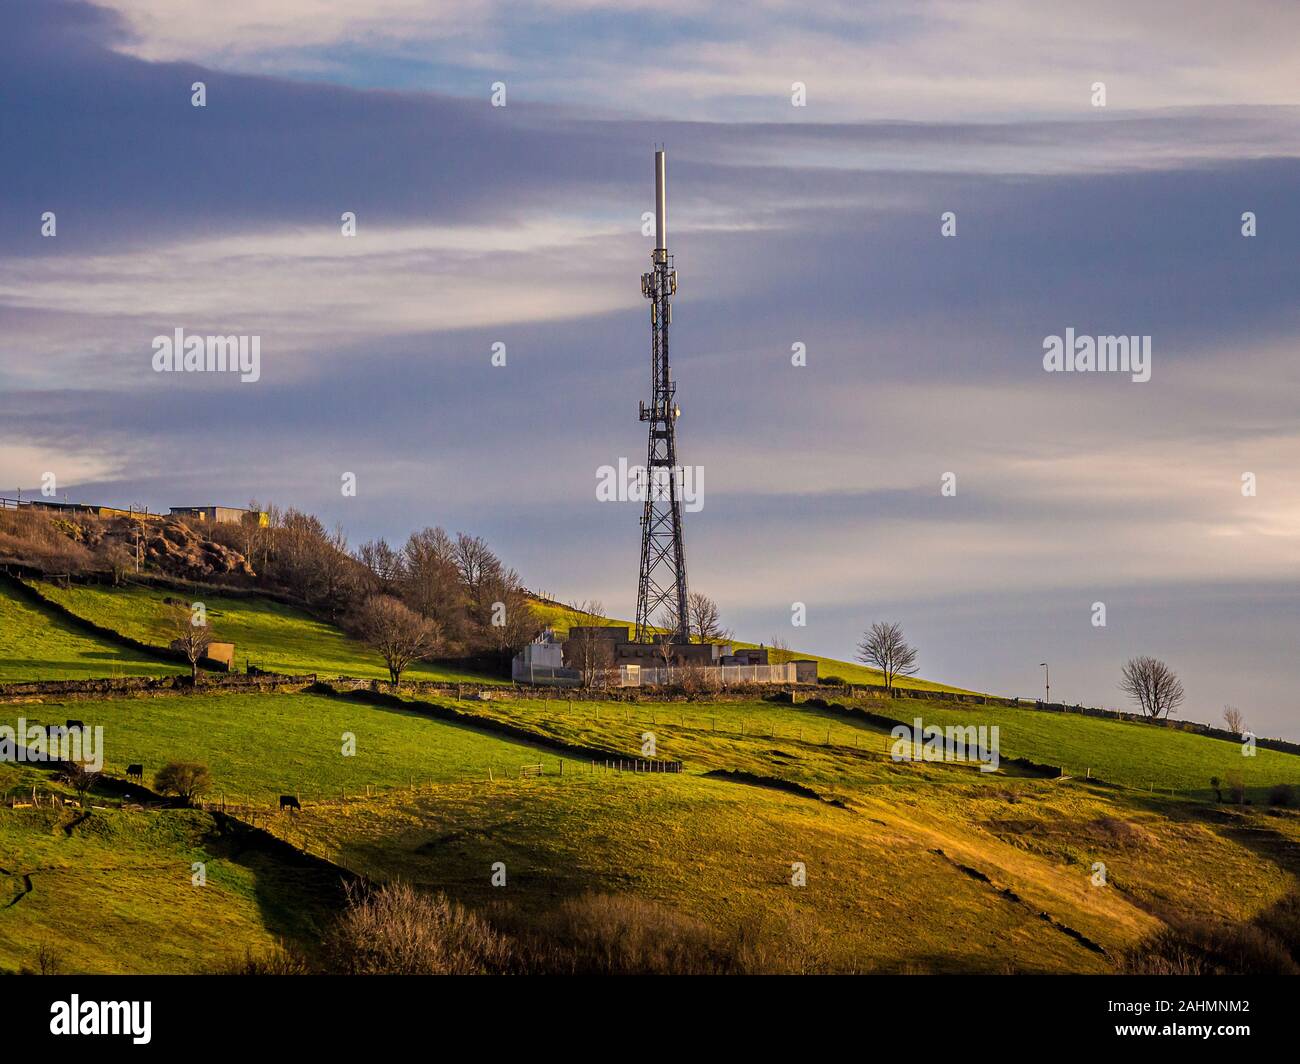 Communication mast in farming landscape, UK. Stock Photo